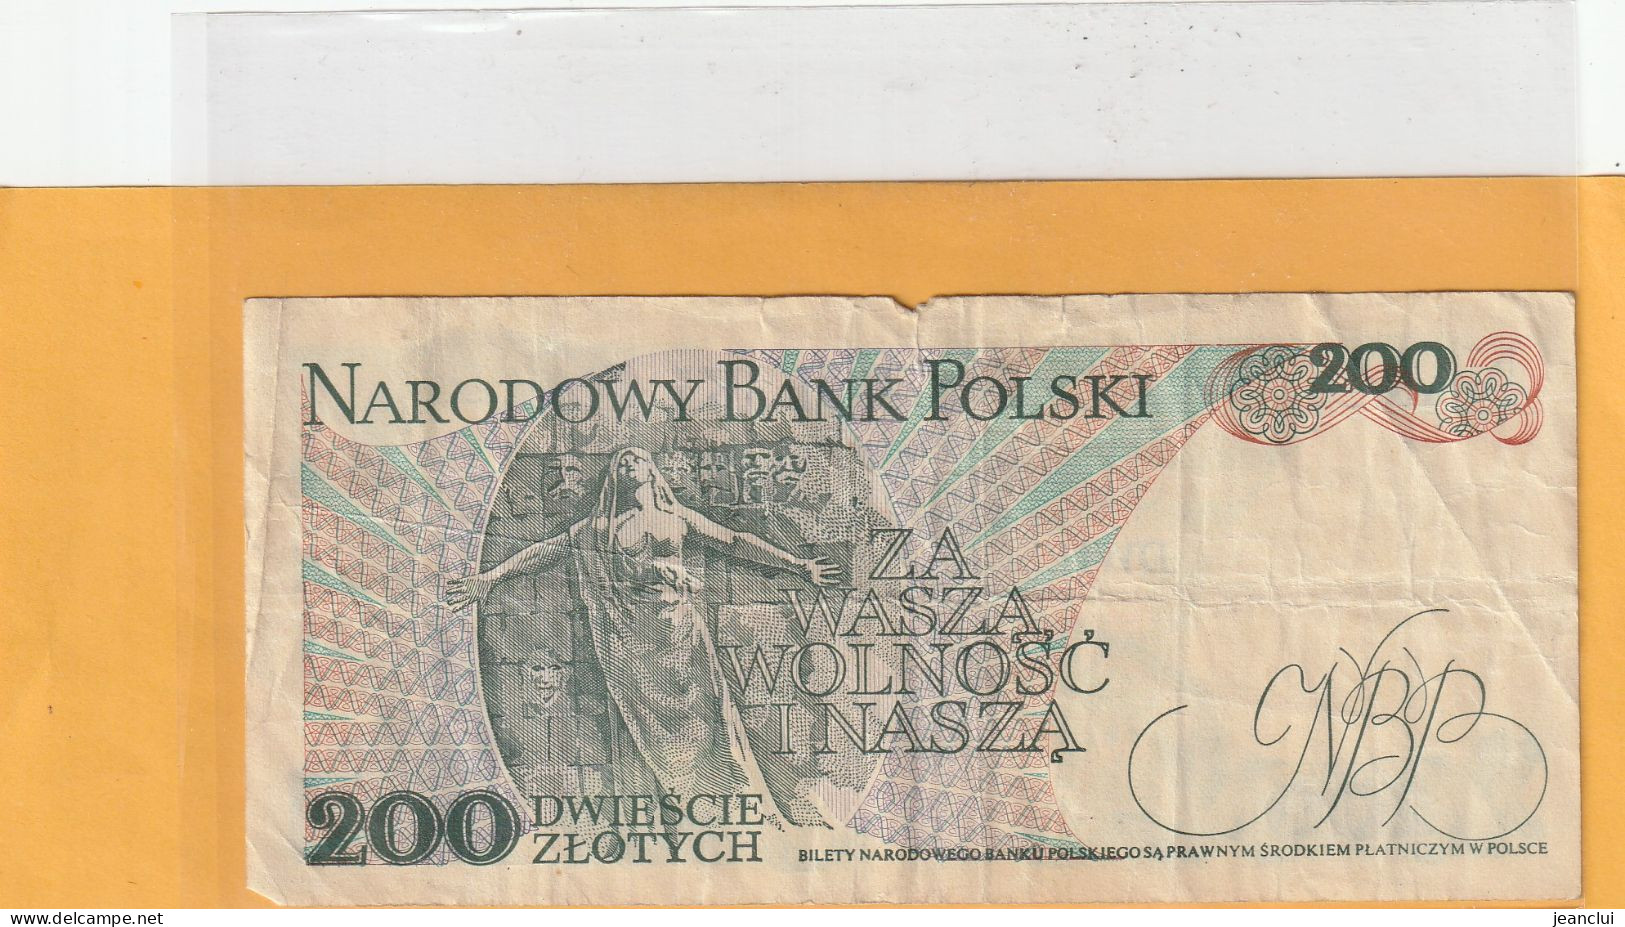 NARODOWY BANK POLSKI . 200 ZLOTYCH .  J. DABROWSKI  . 1-12-1988 .  N° EE 5758859 . 2 SCANNES  .  BILLET USITE - Poland